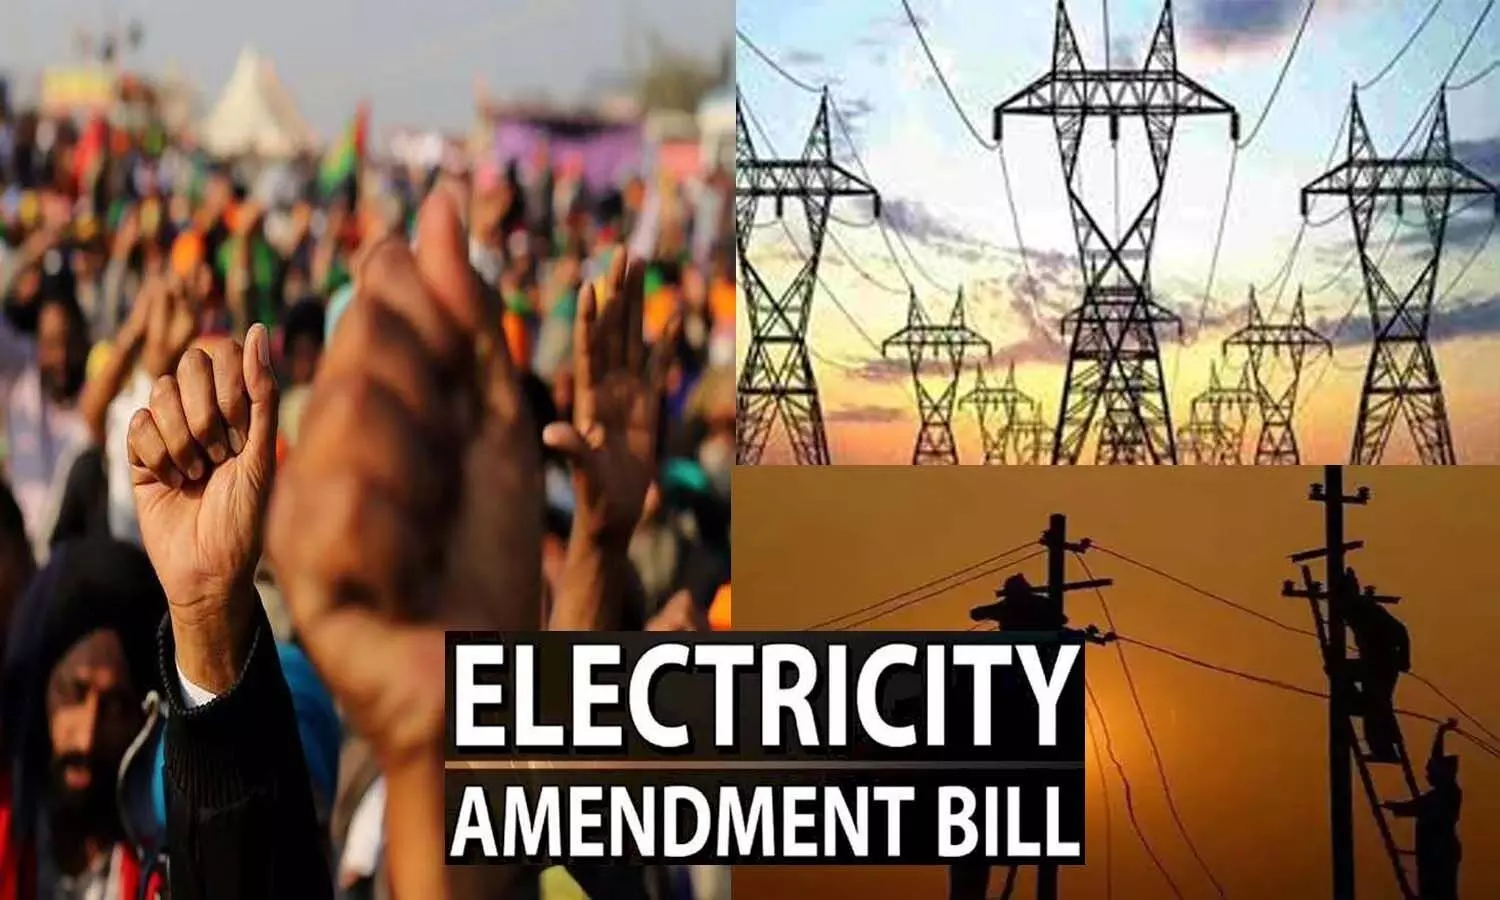 Electricity Amendment Bill 2022: बिल के विरोध में 8 अगस्त को काम बंद, बिजली कर्मचारी व इंजीनियर करेंगे प्रदर्शन